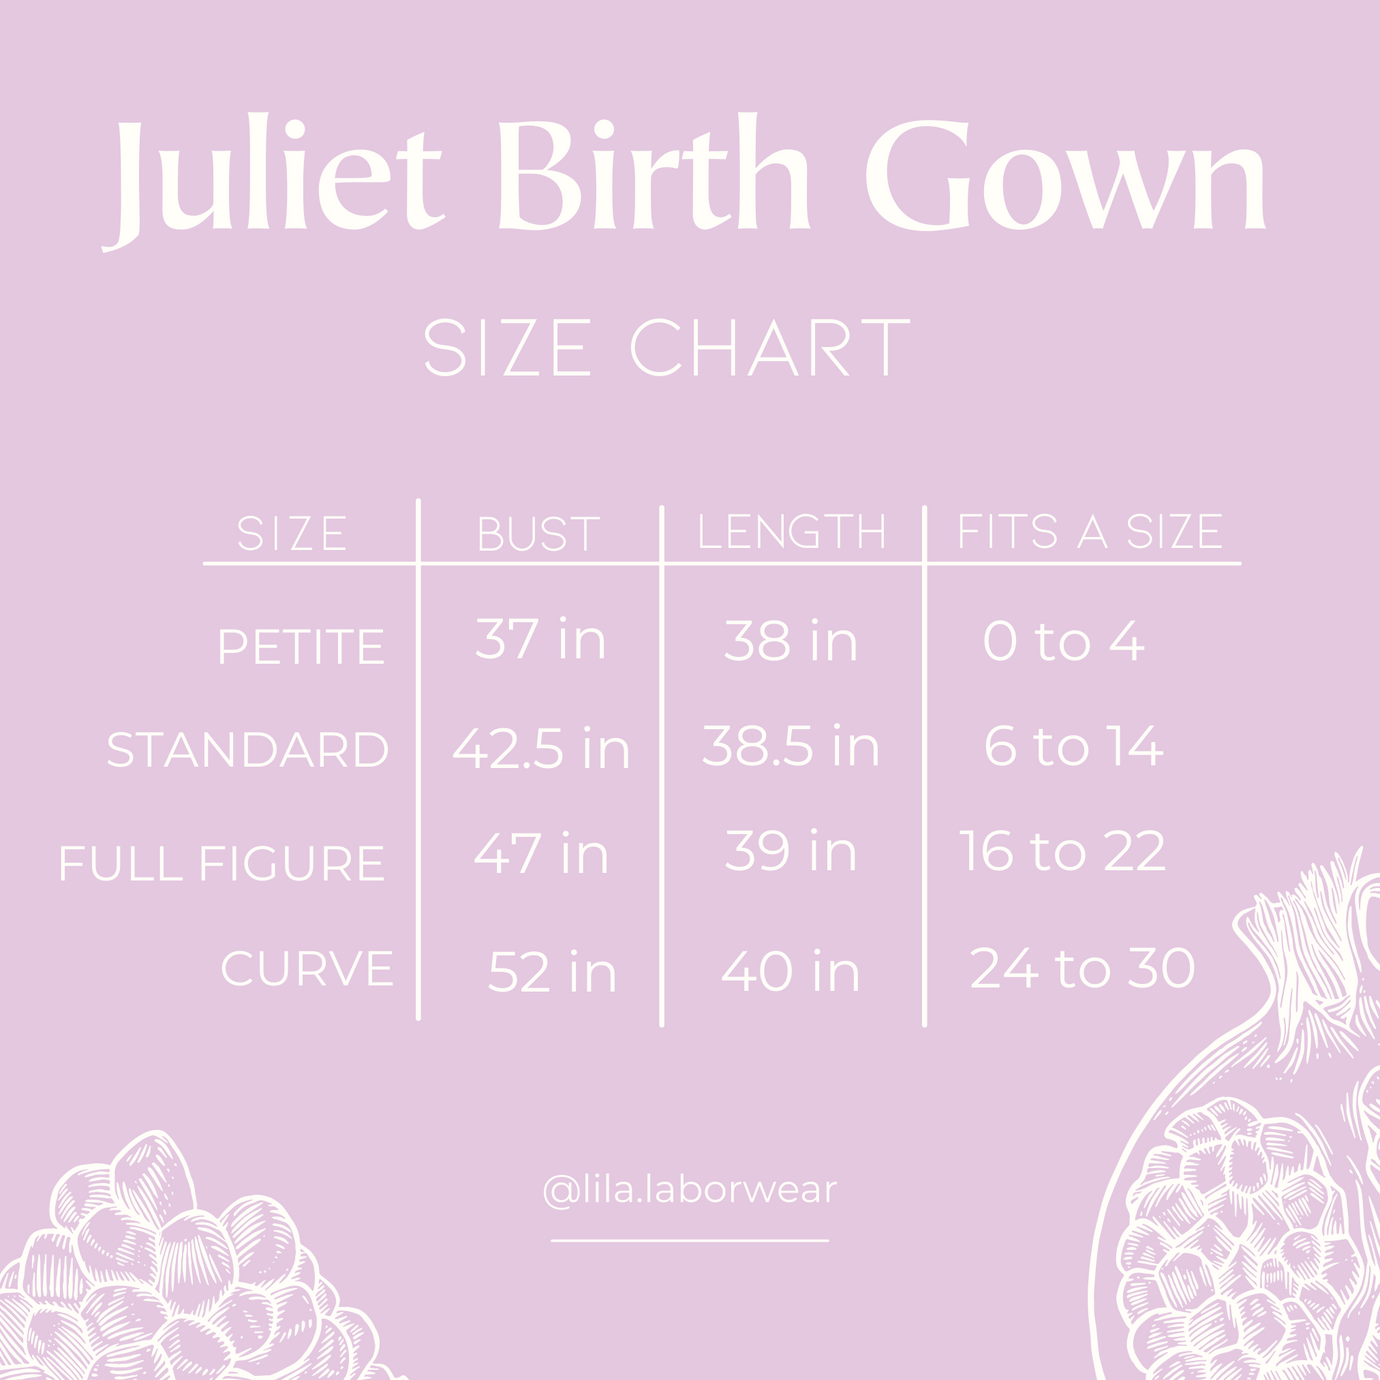 Juliet birth gown size chart